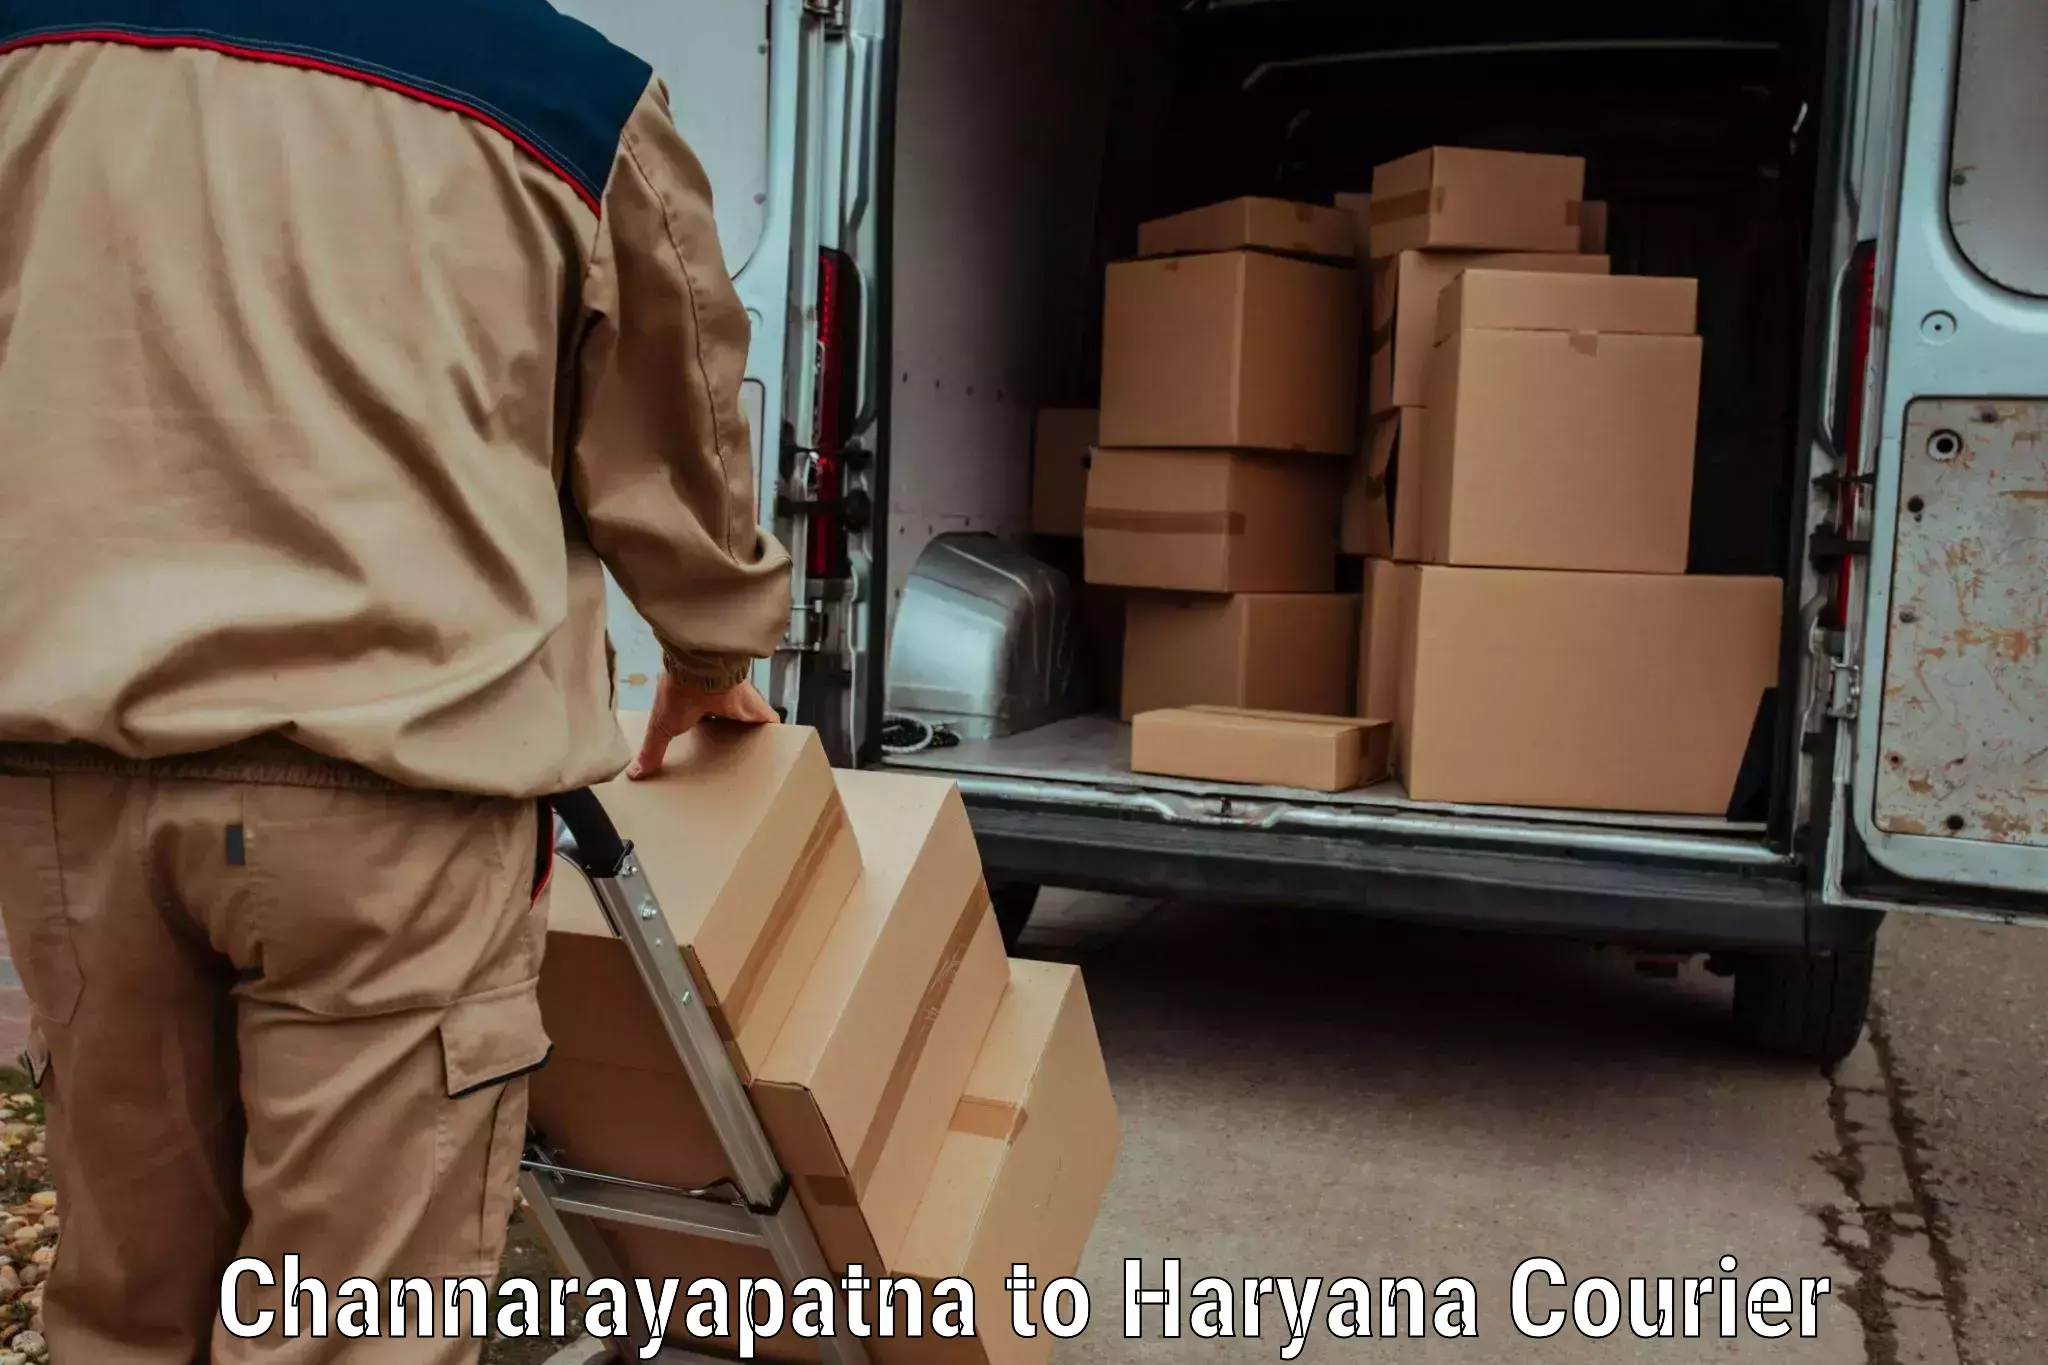 Next-day freight services Channarayapatna to Bhiwani